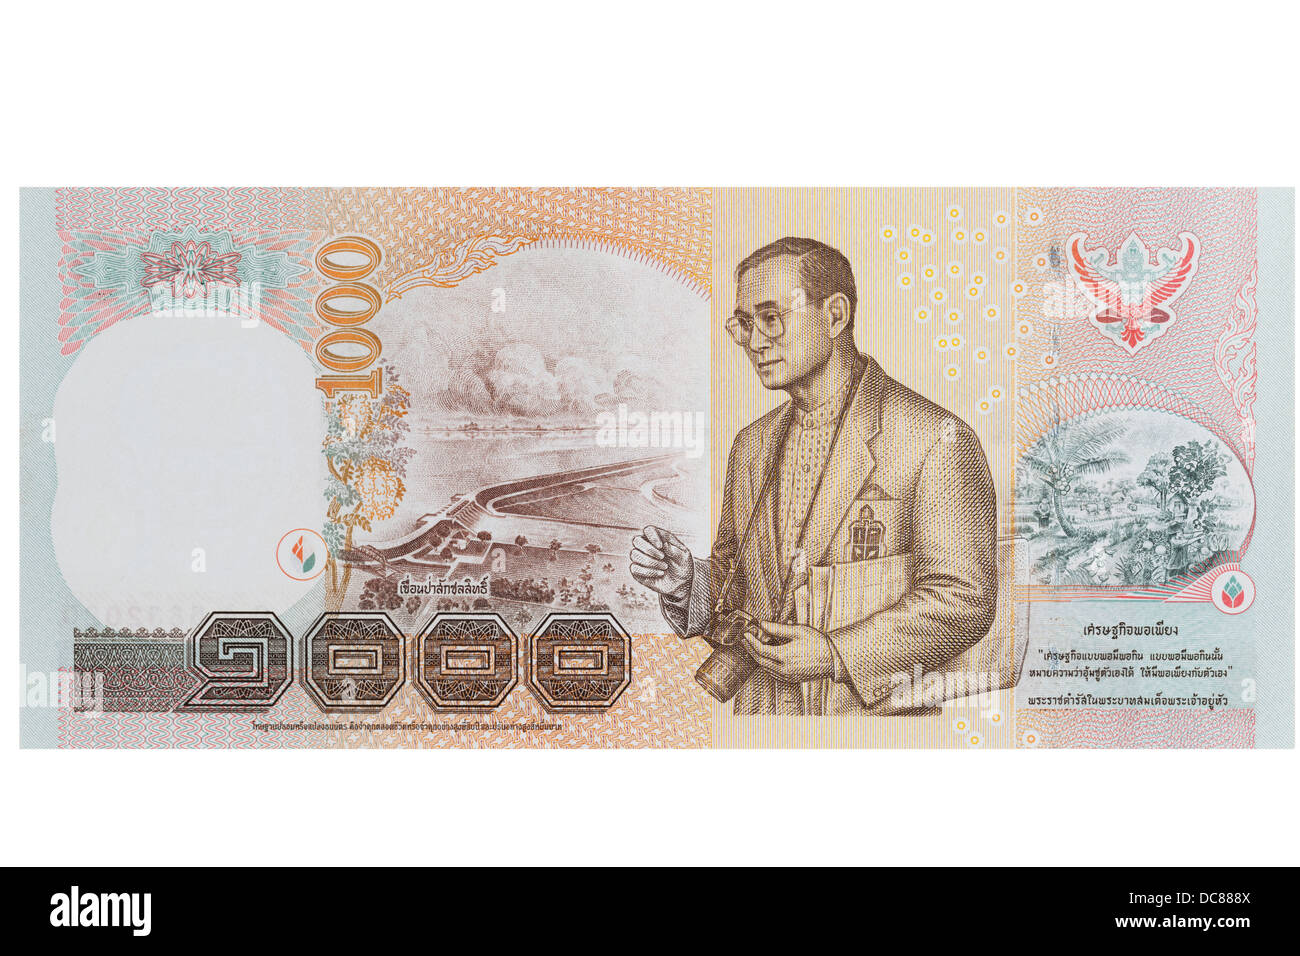 30000 батов в рублях. Купюра Тайланда 1000. 1000 Бат купюра. 1000 Бат Тайланд. Таиландская банкнота с фотоаппаратом.